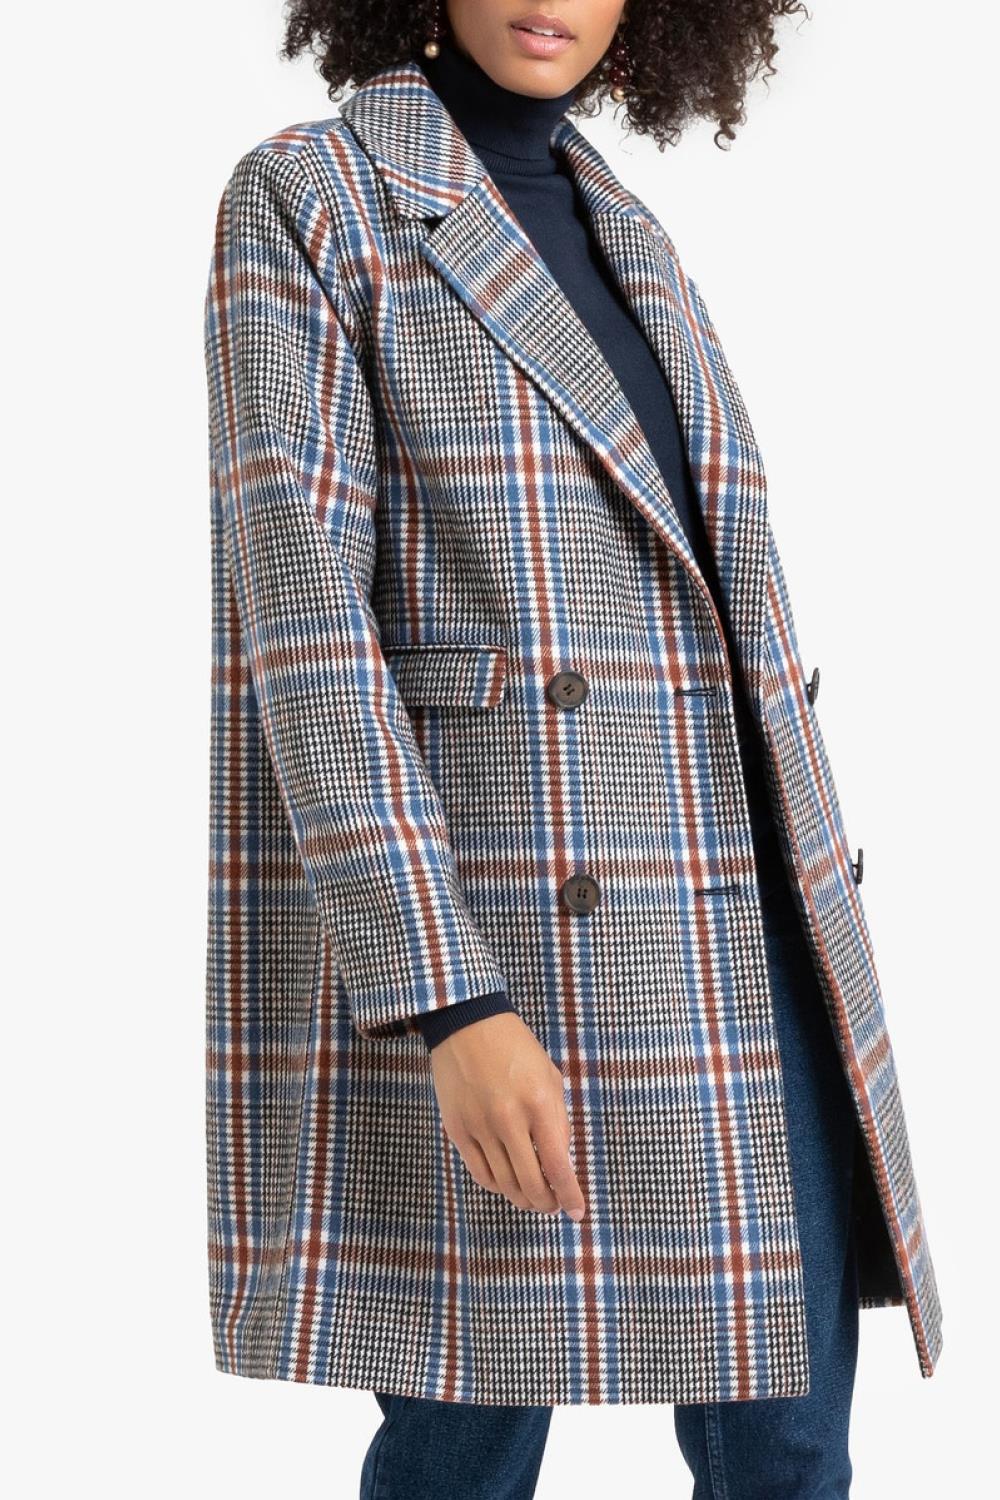 abrigos de moda otoño invierno 2019 2020 la redoute 56,99€